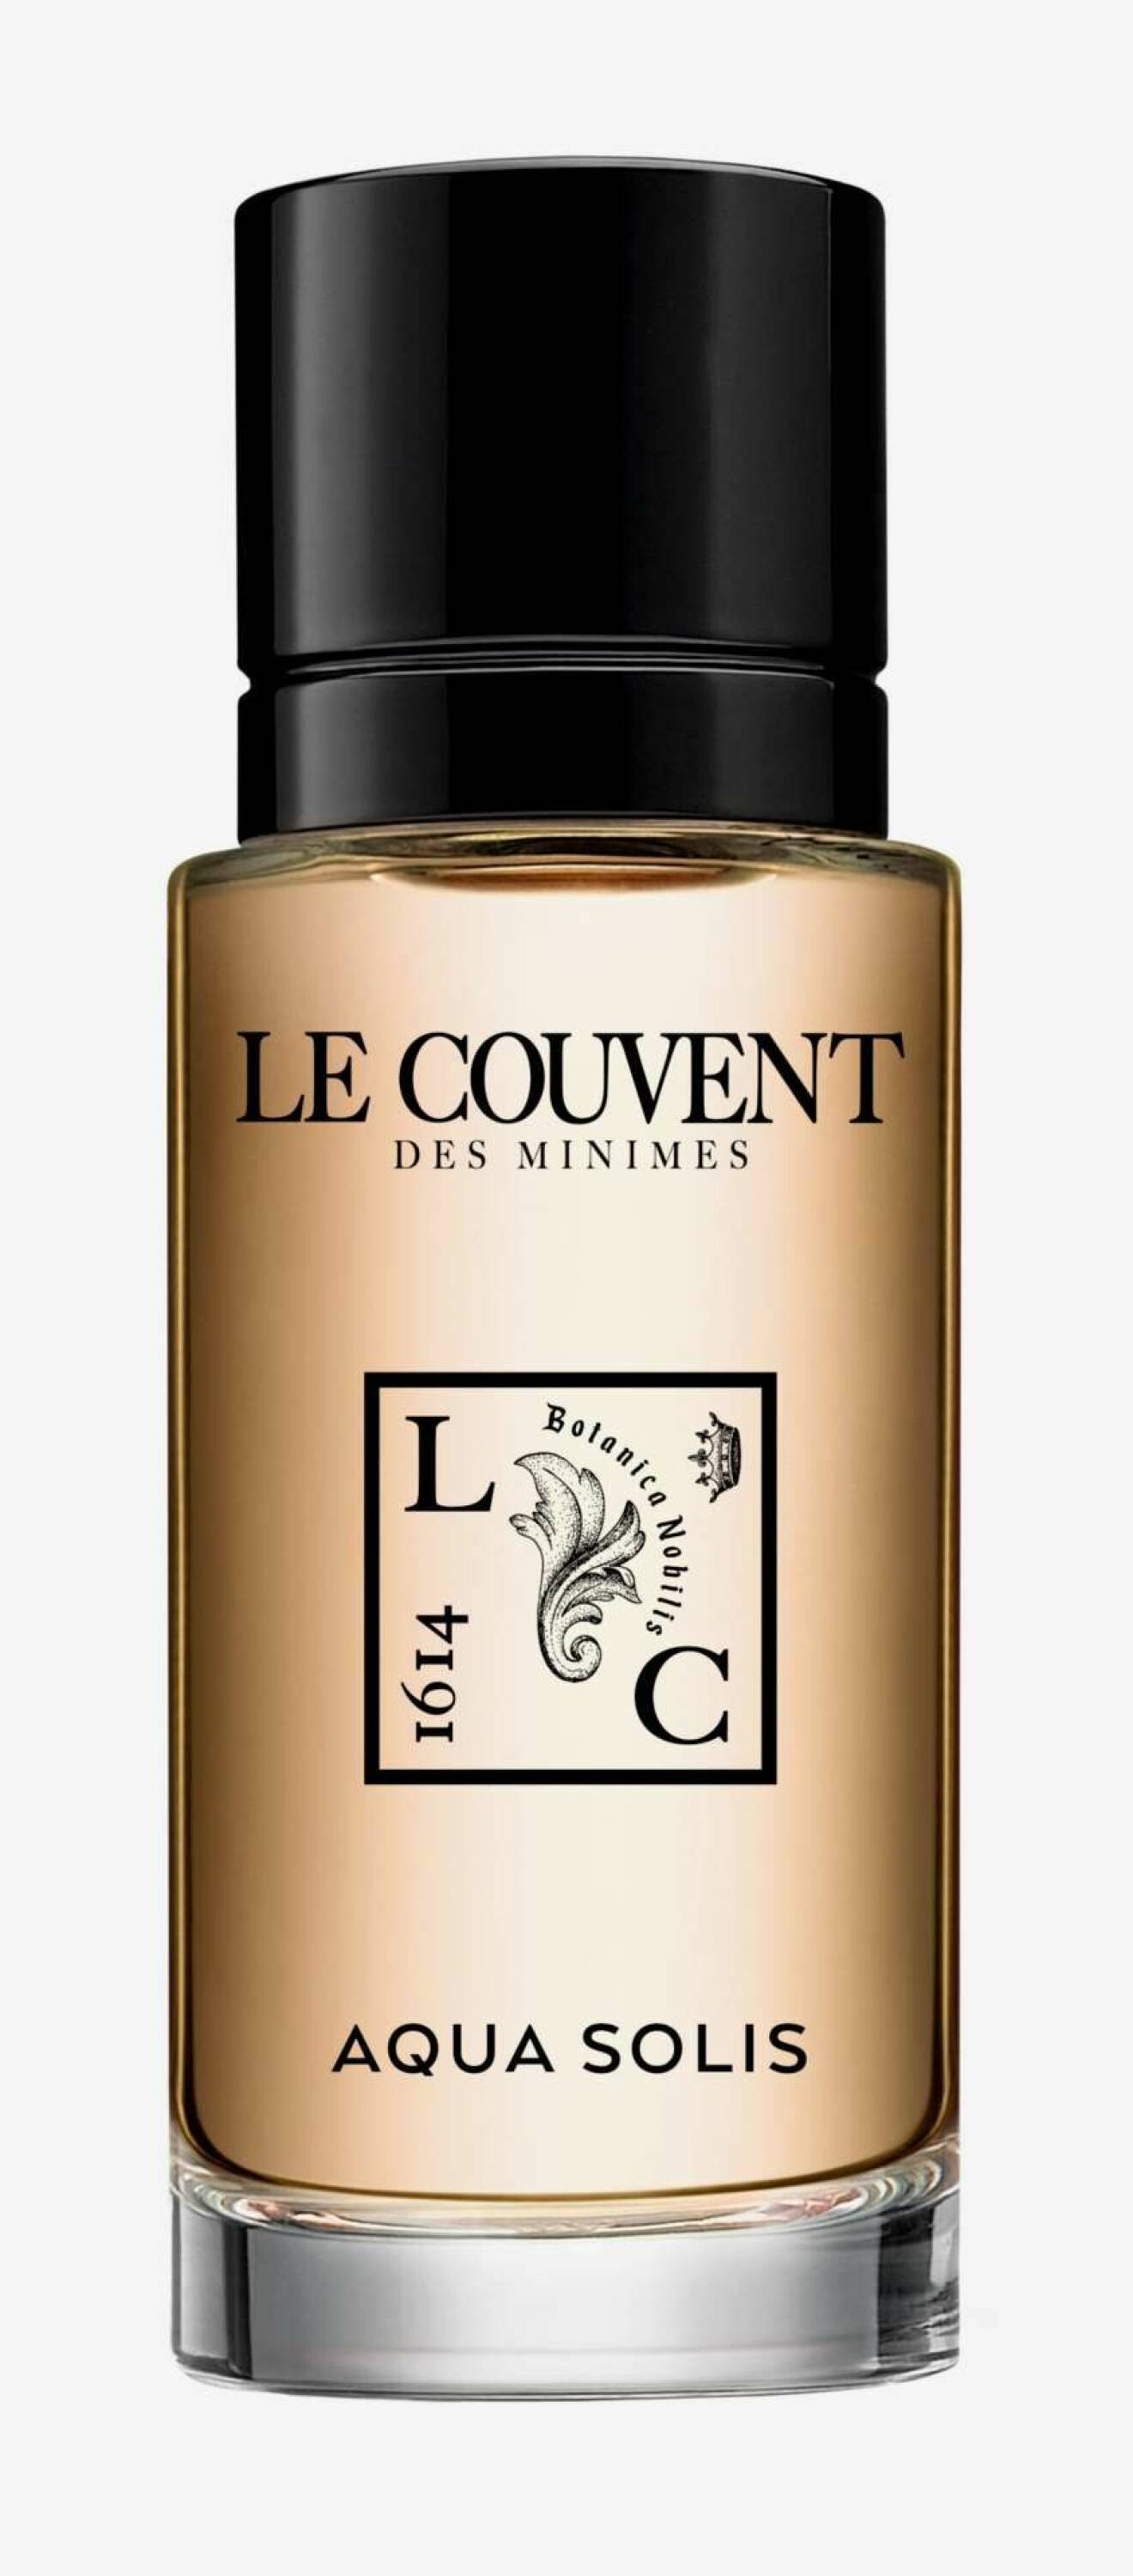 Parfymen Aqua Solis från Le Couvent.